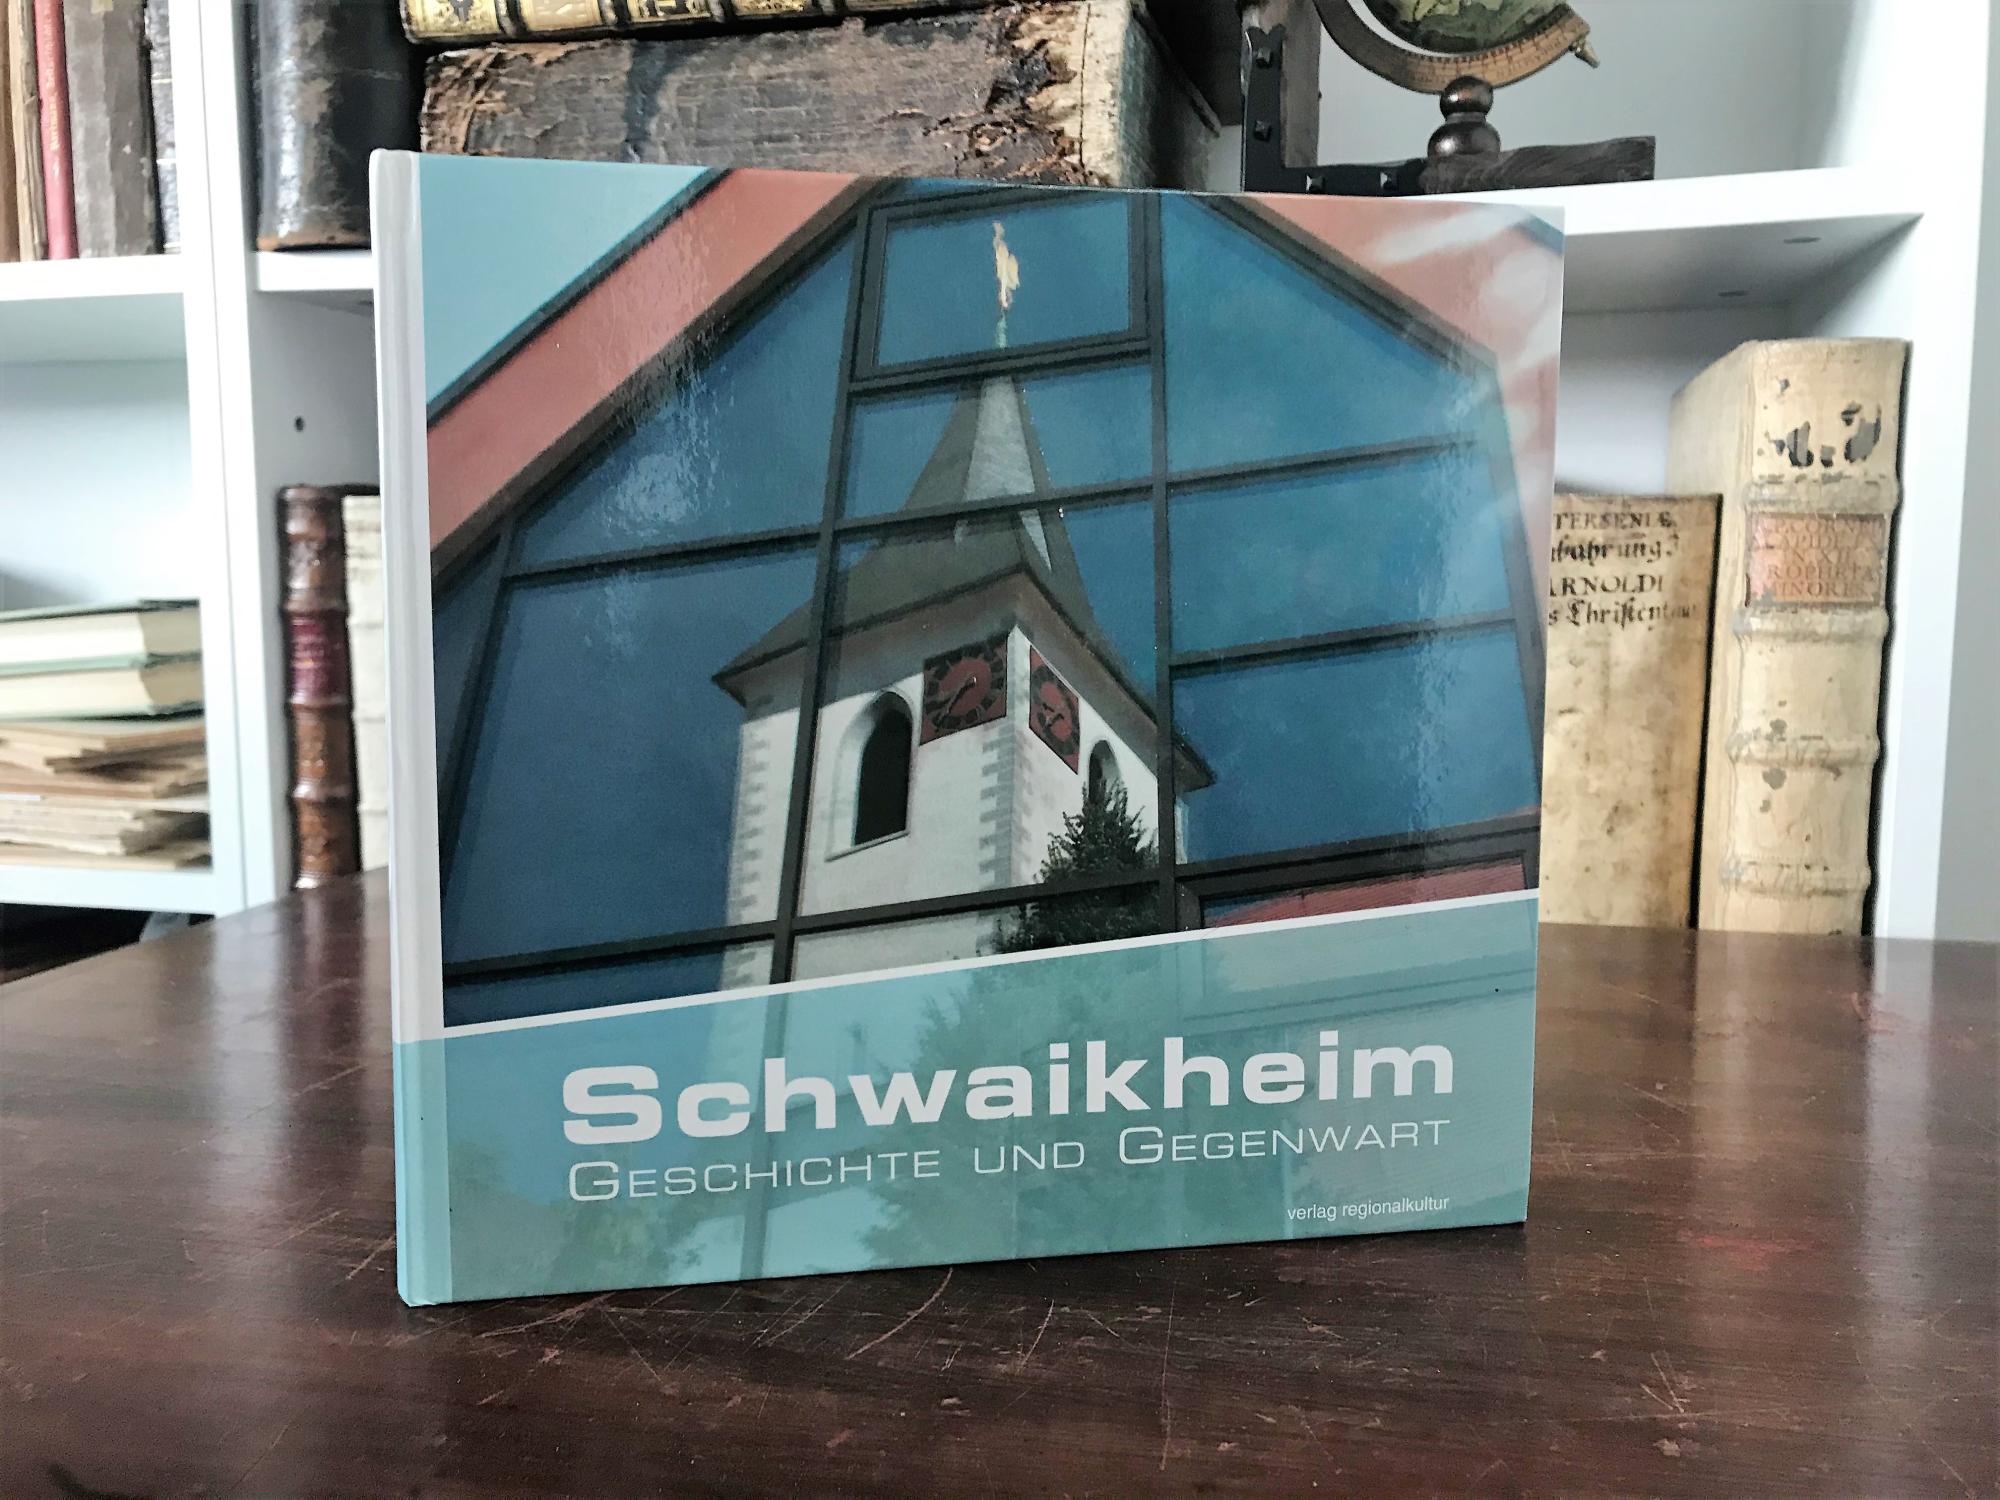 Schwaikheim: Geschichte und Gegenwart